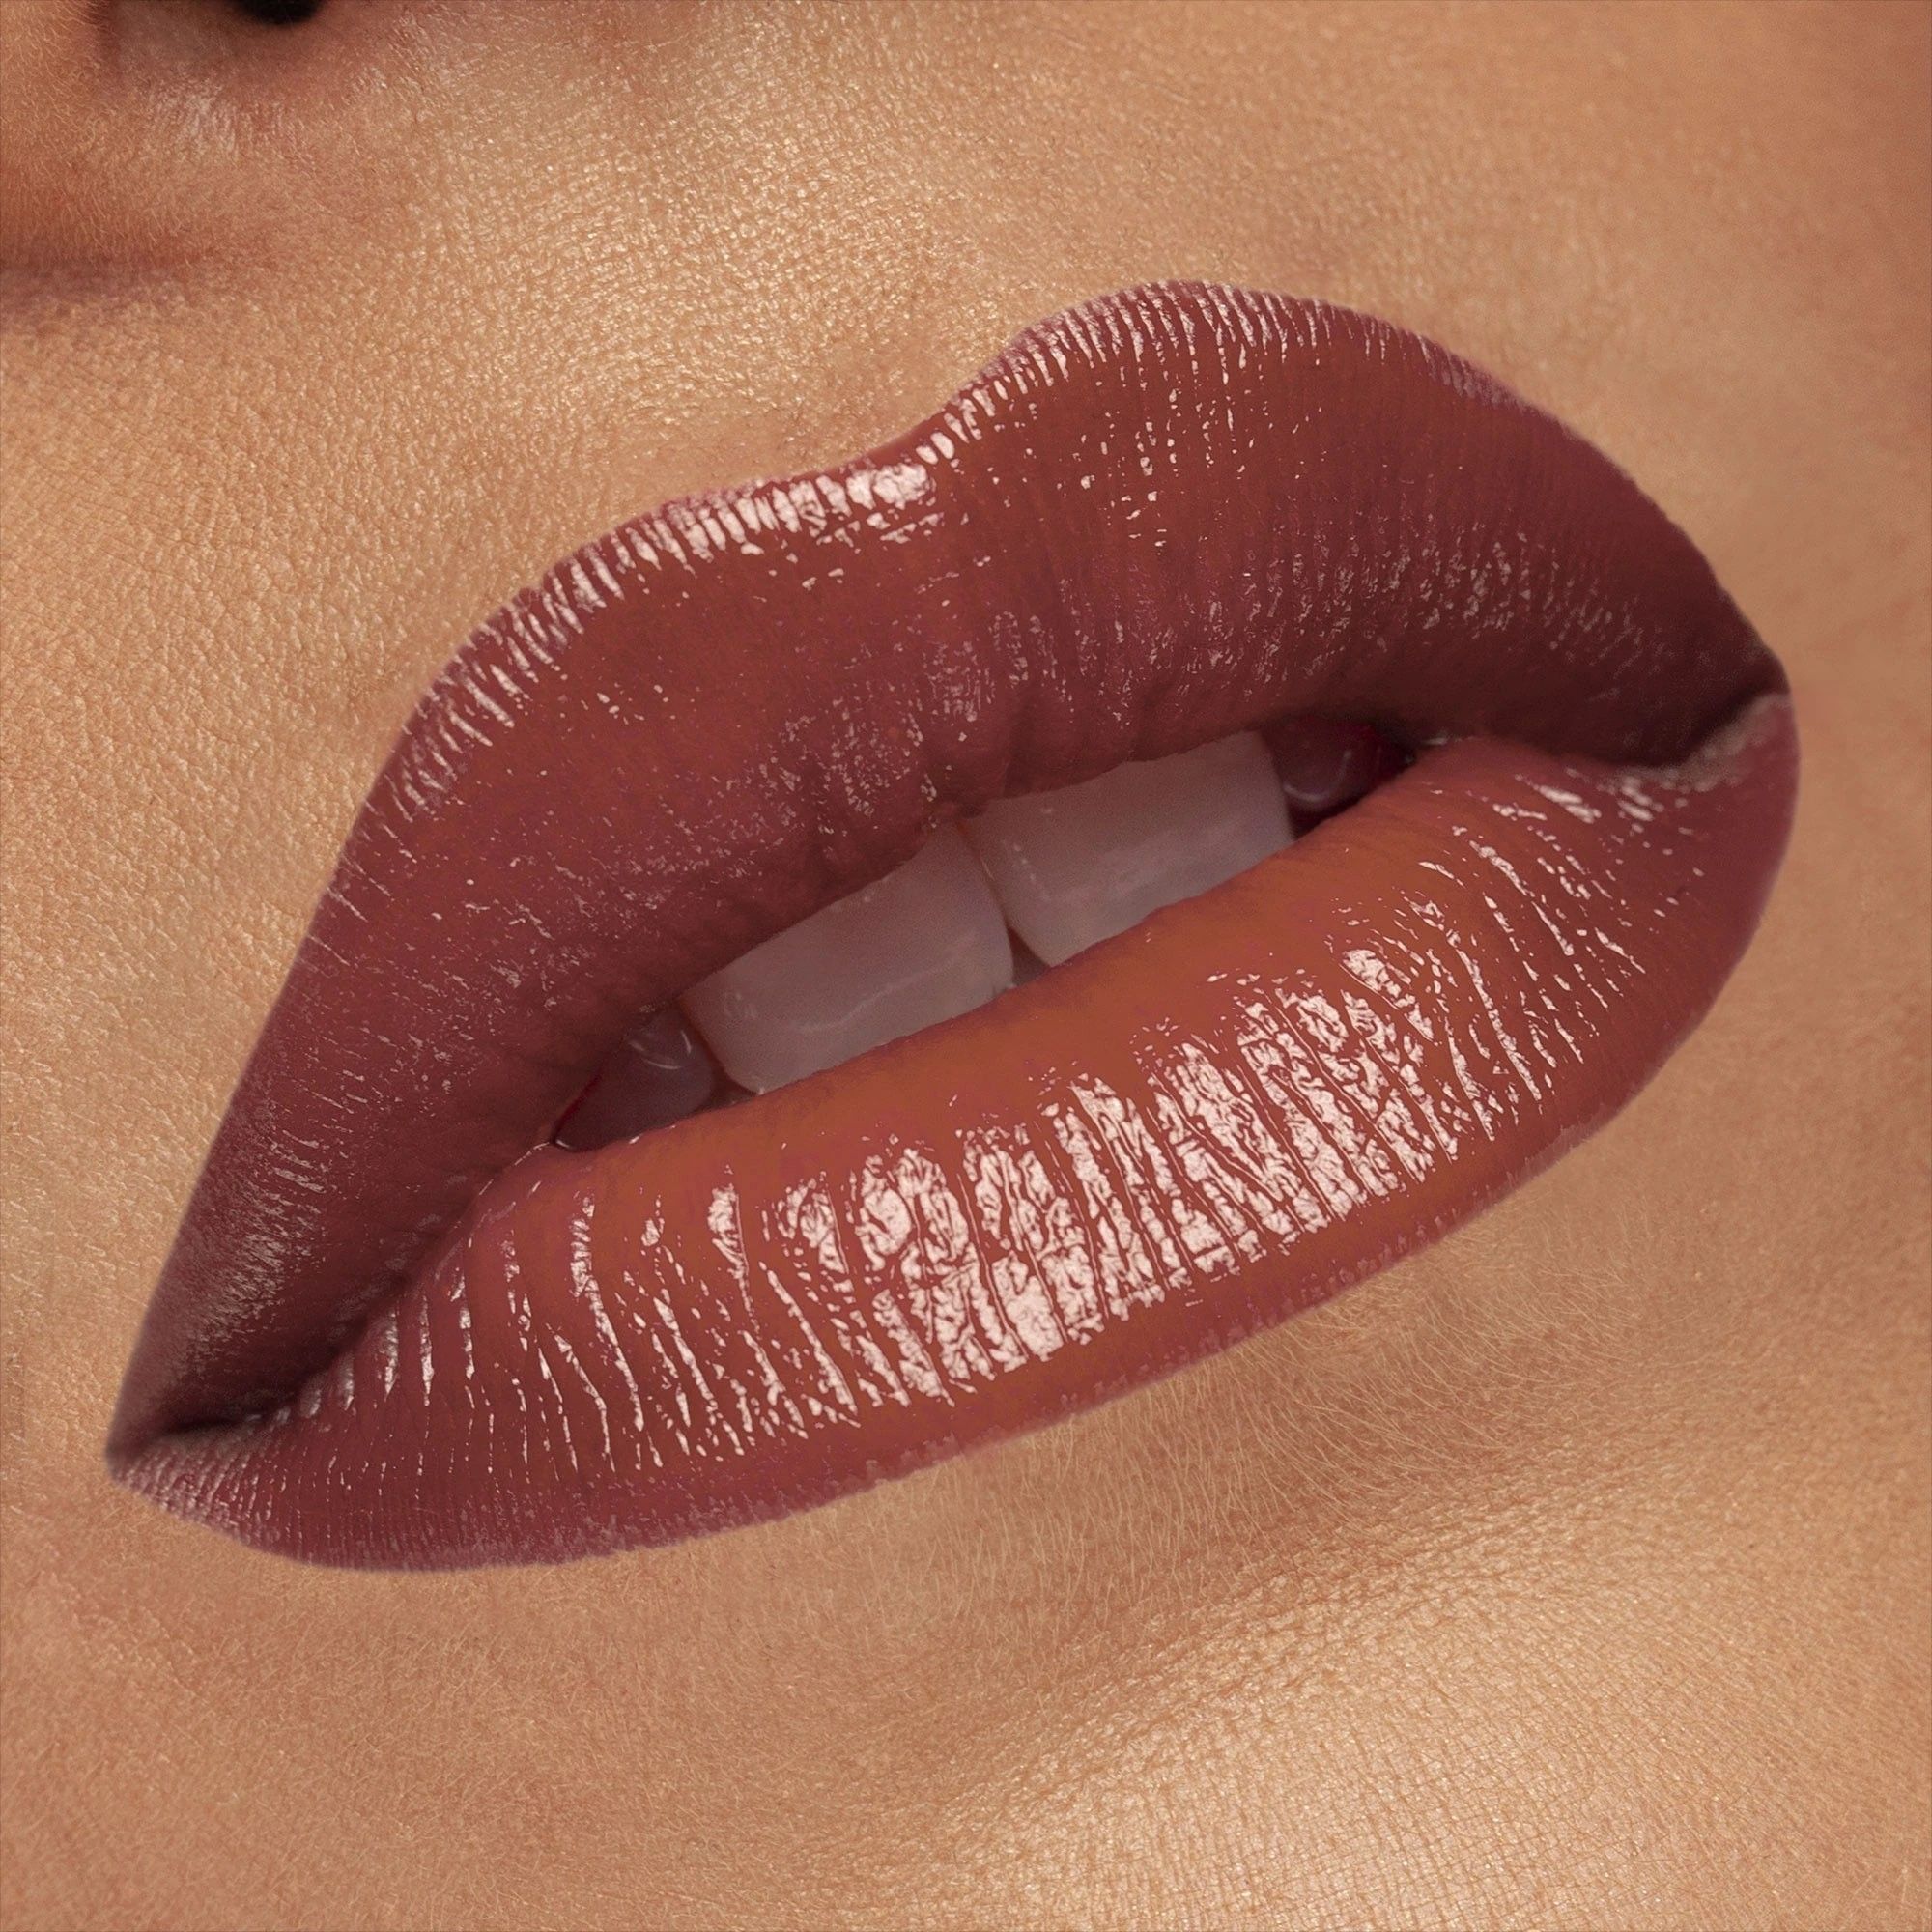 Rouge à Lèvres - Cult Creamy Lipstick